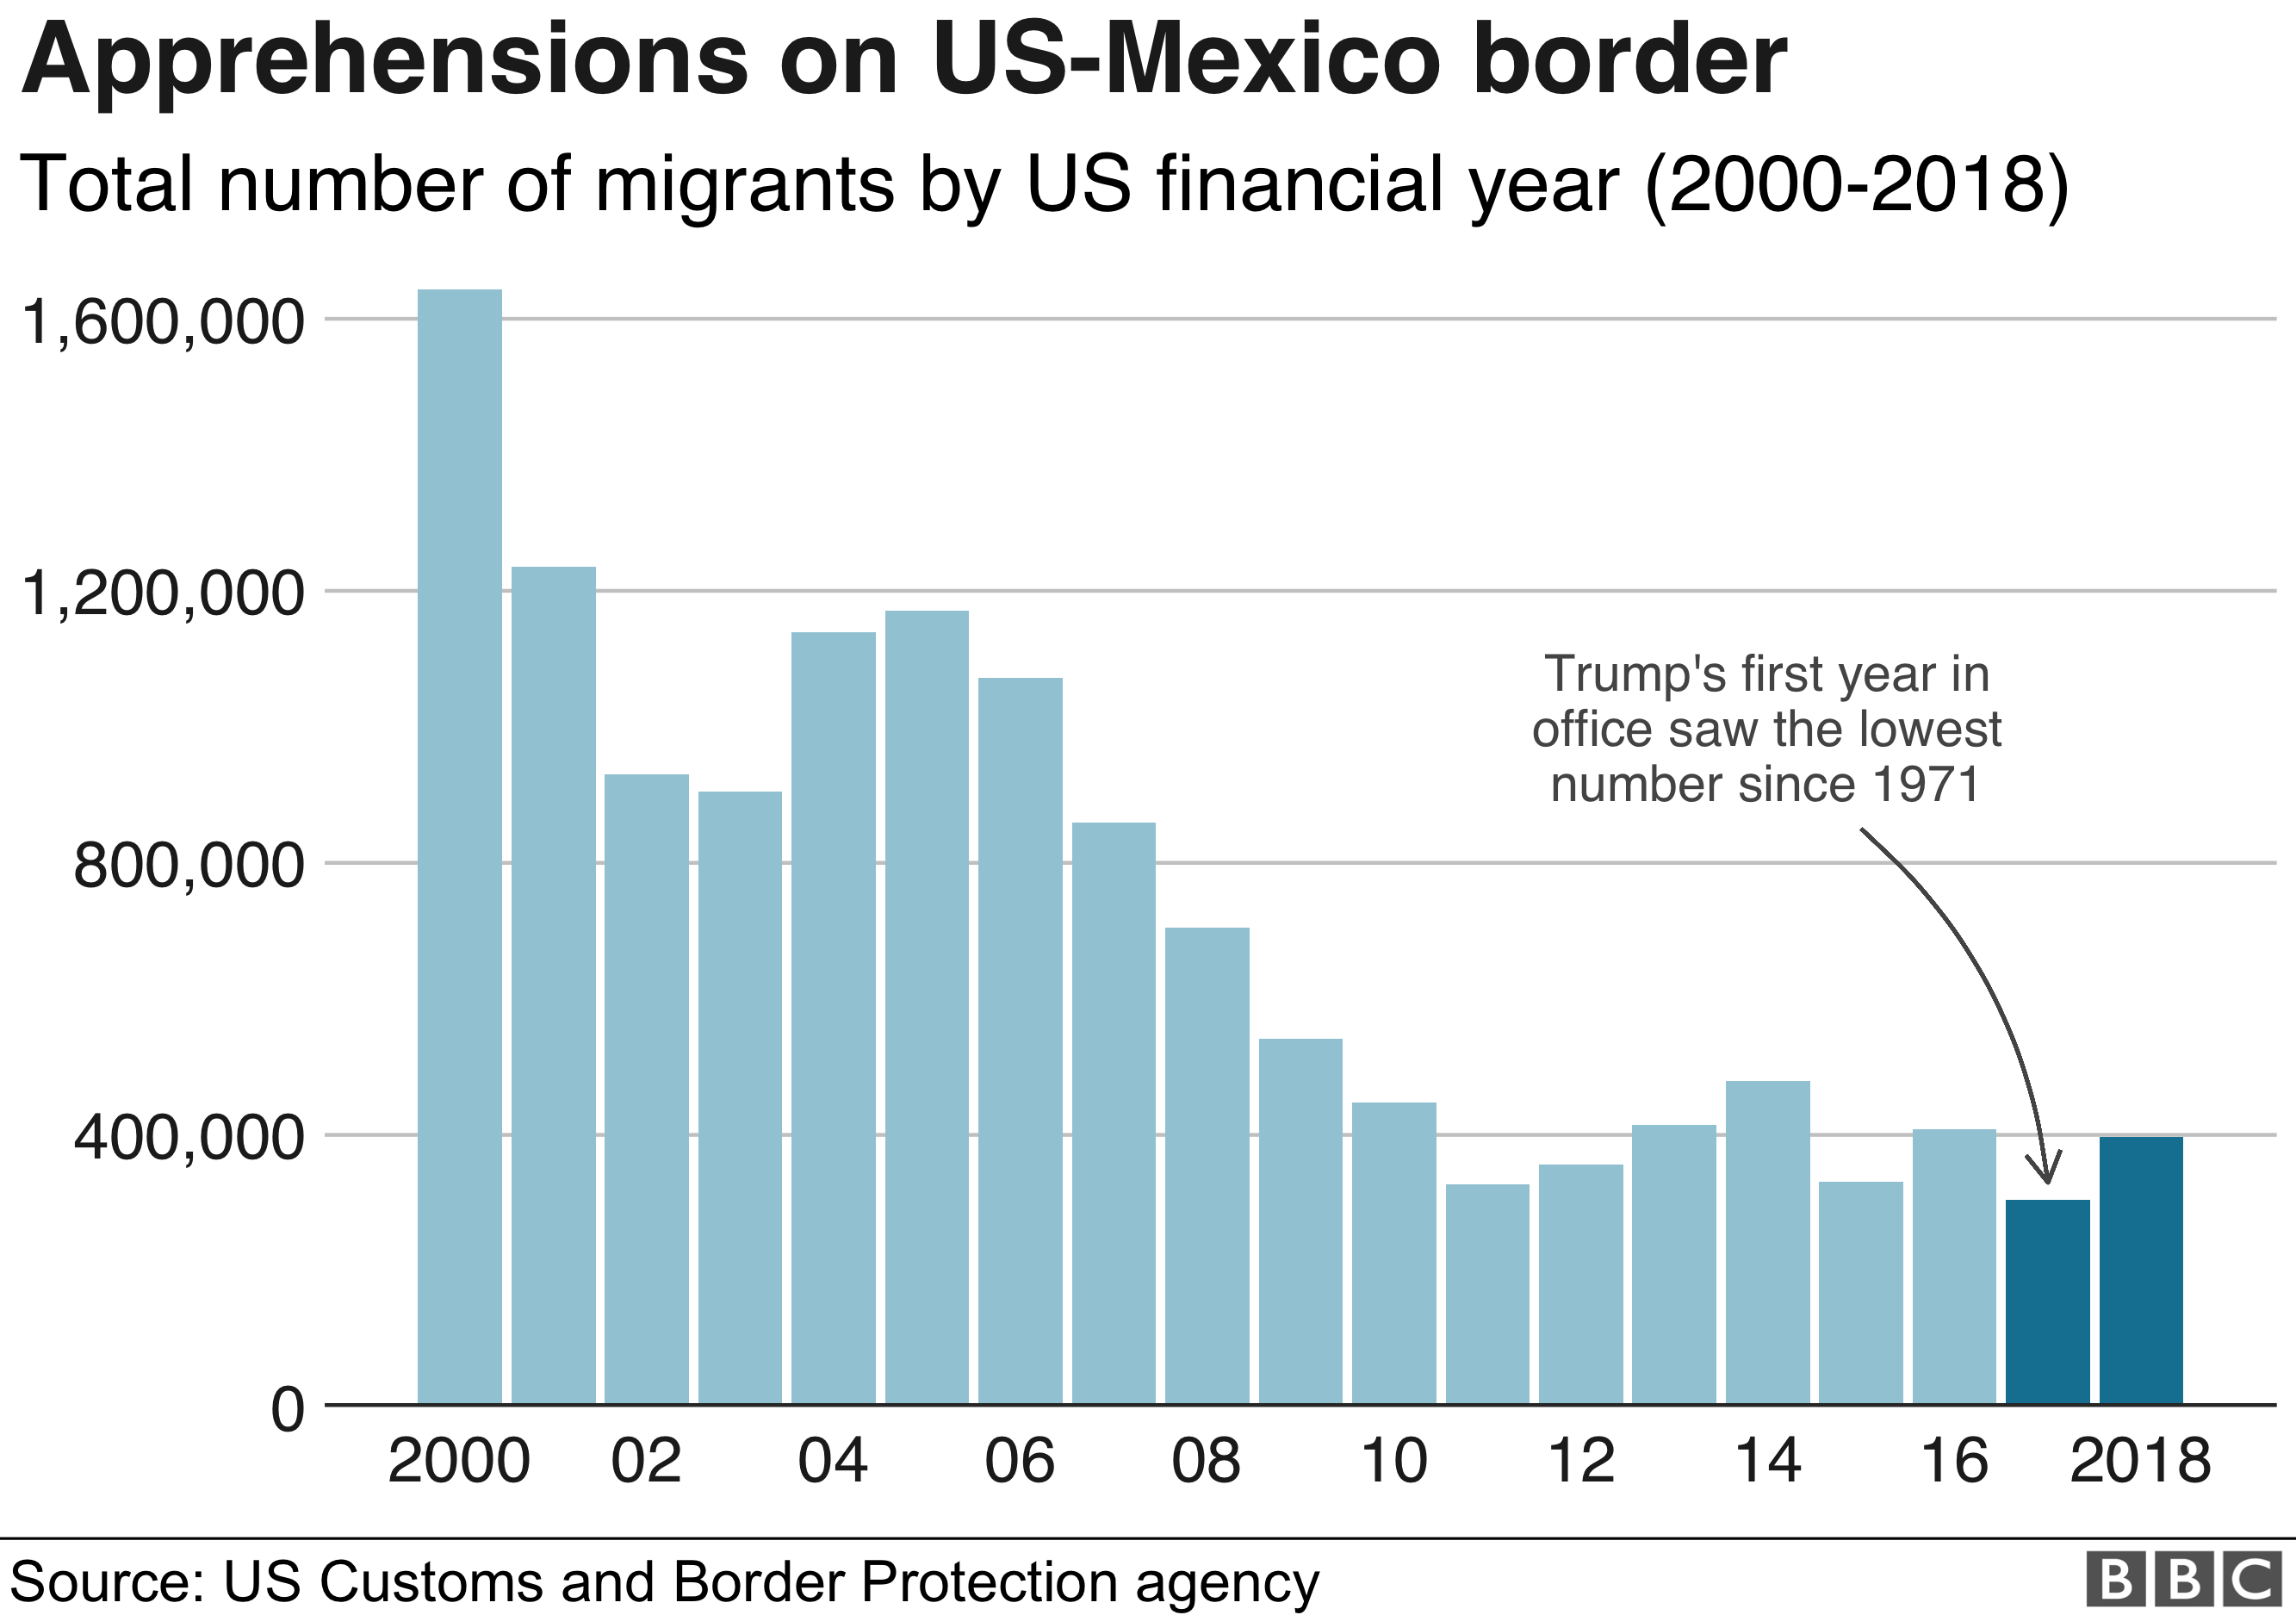 Диаграмма: Опасения на границе США и Мексики в 2017 г. были минимальными с 2000 г.